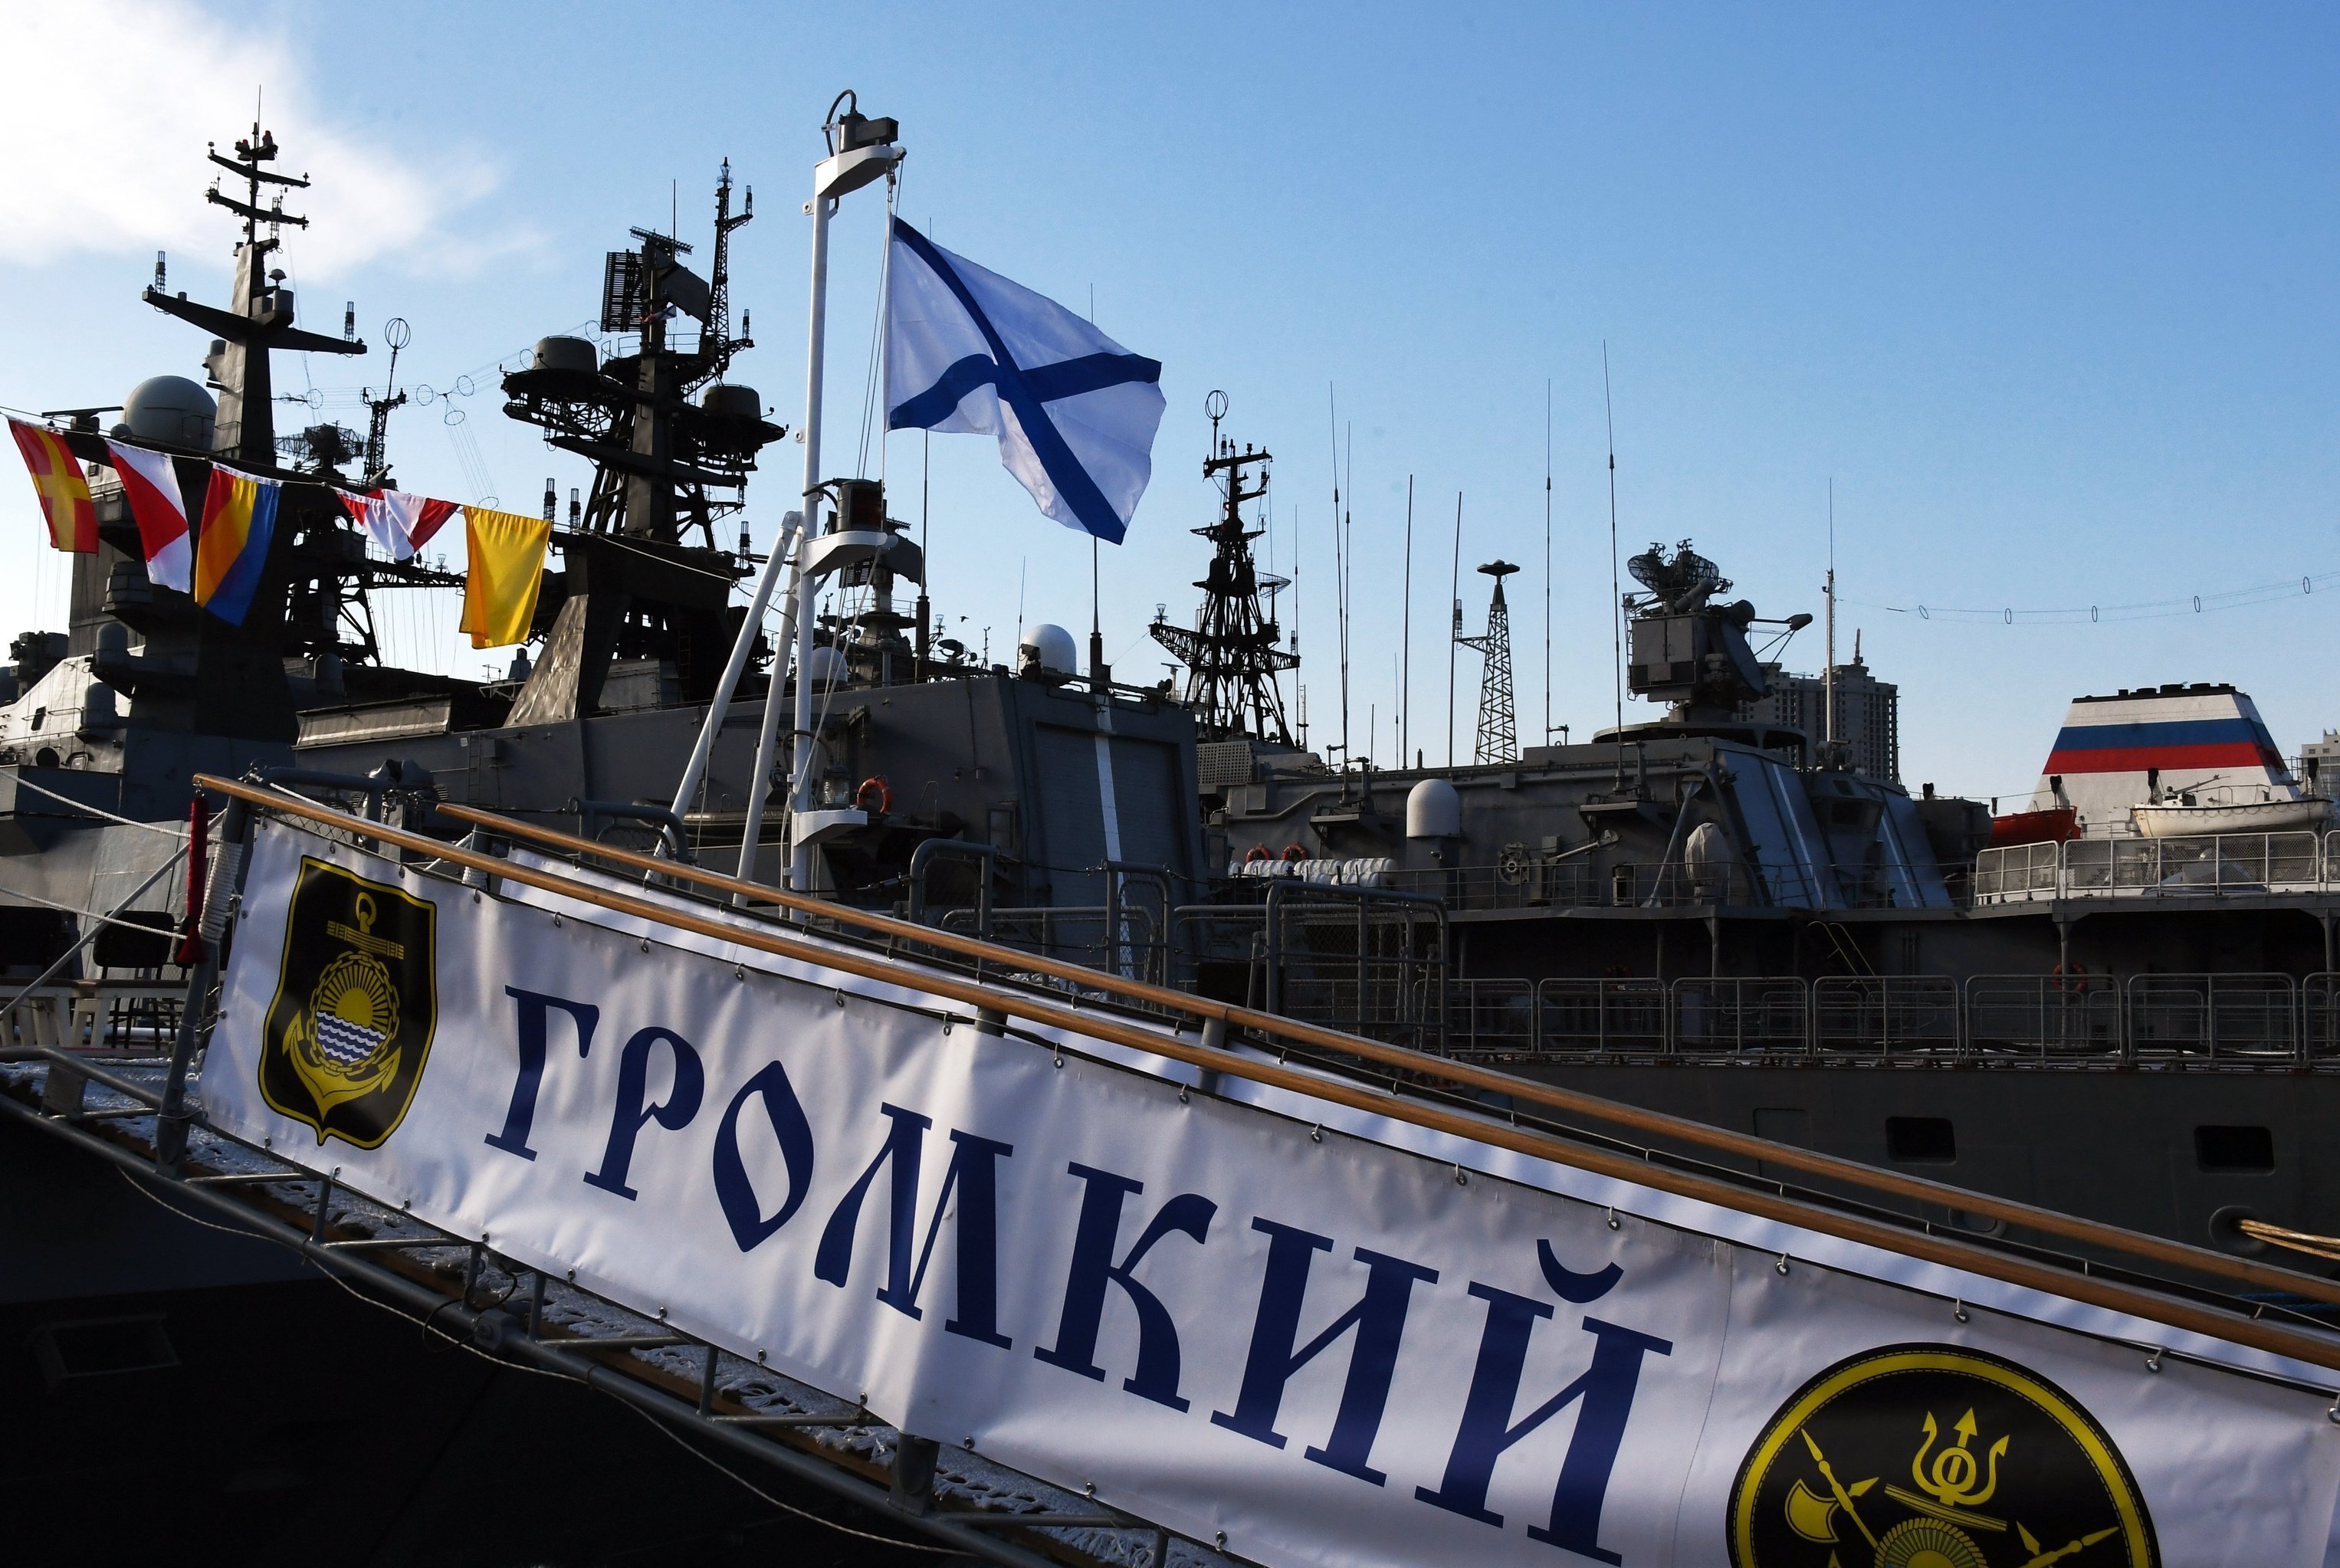 Военно-морской Андреевский флаг поднят на корвете "Громкий" Тихоокеанского флота 